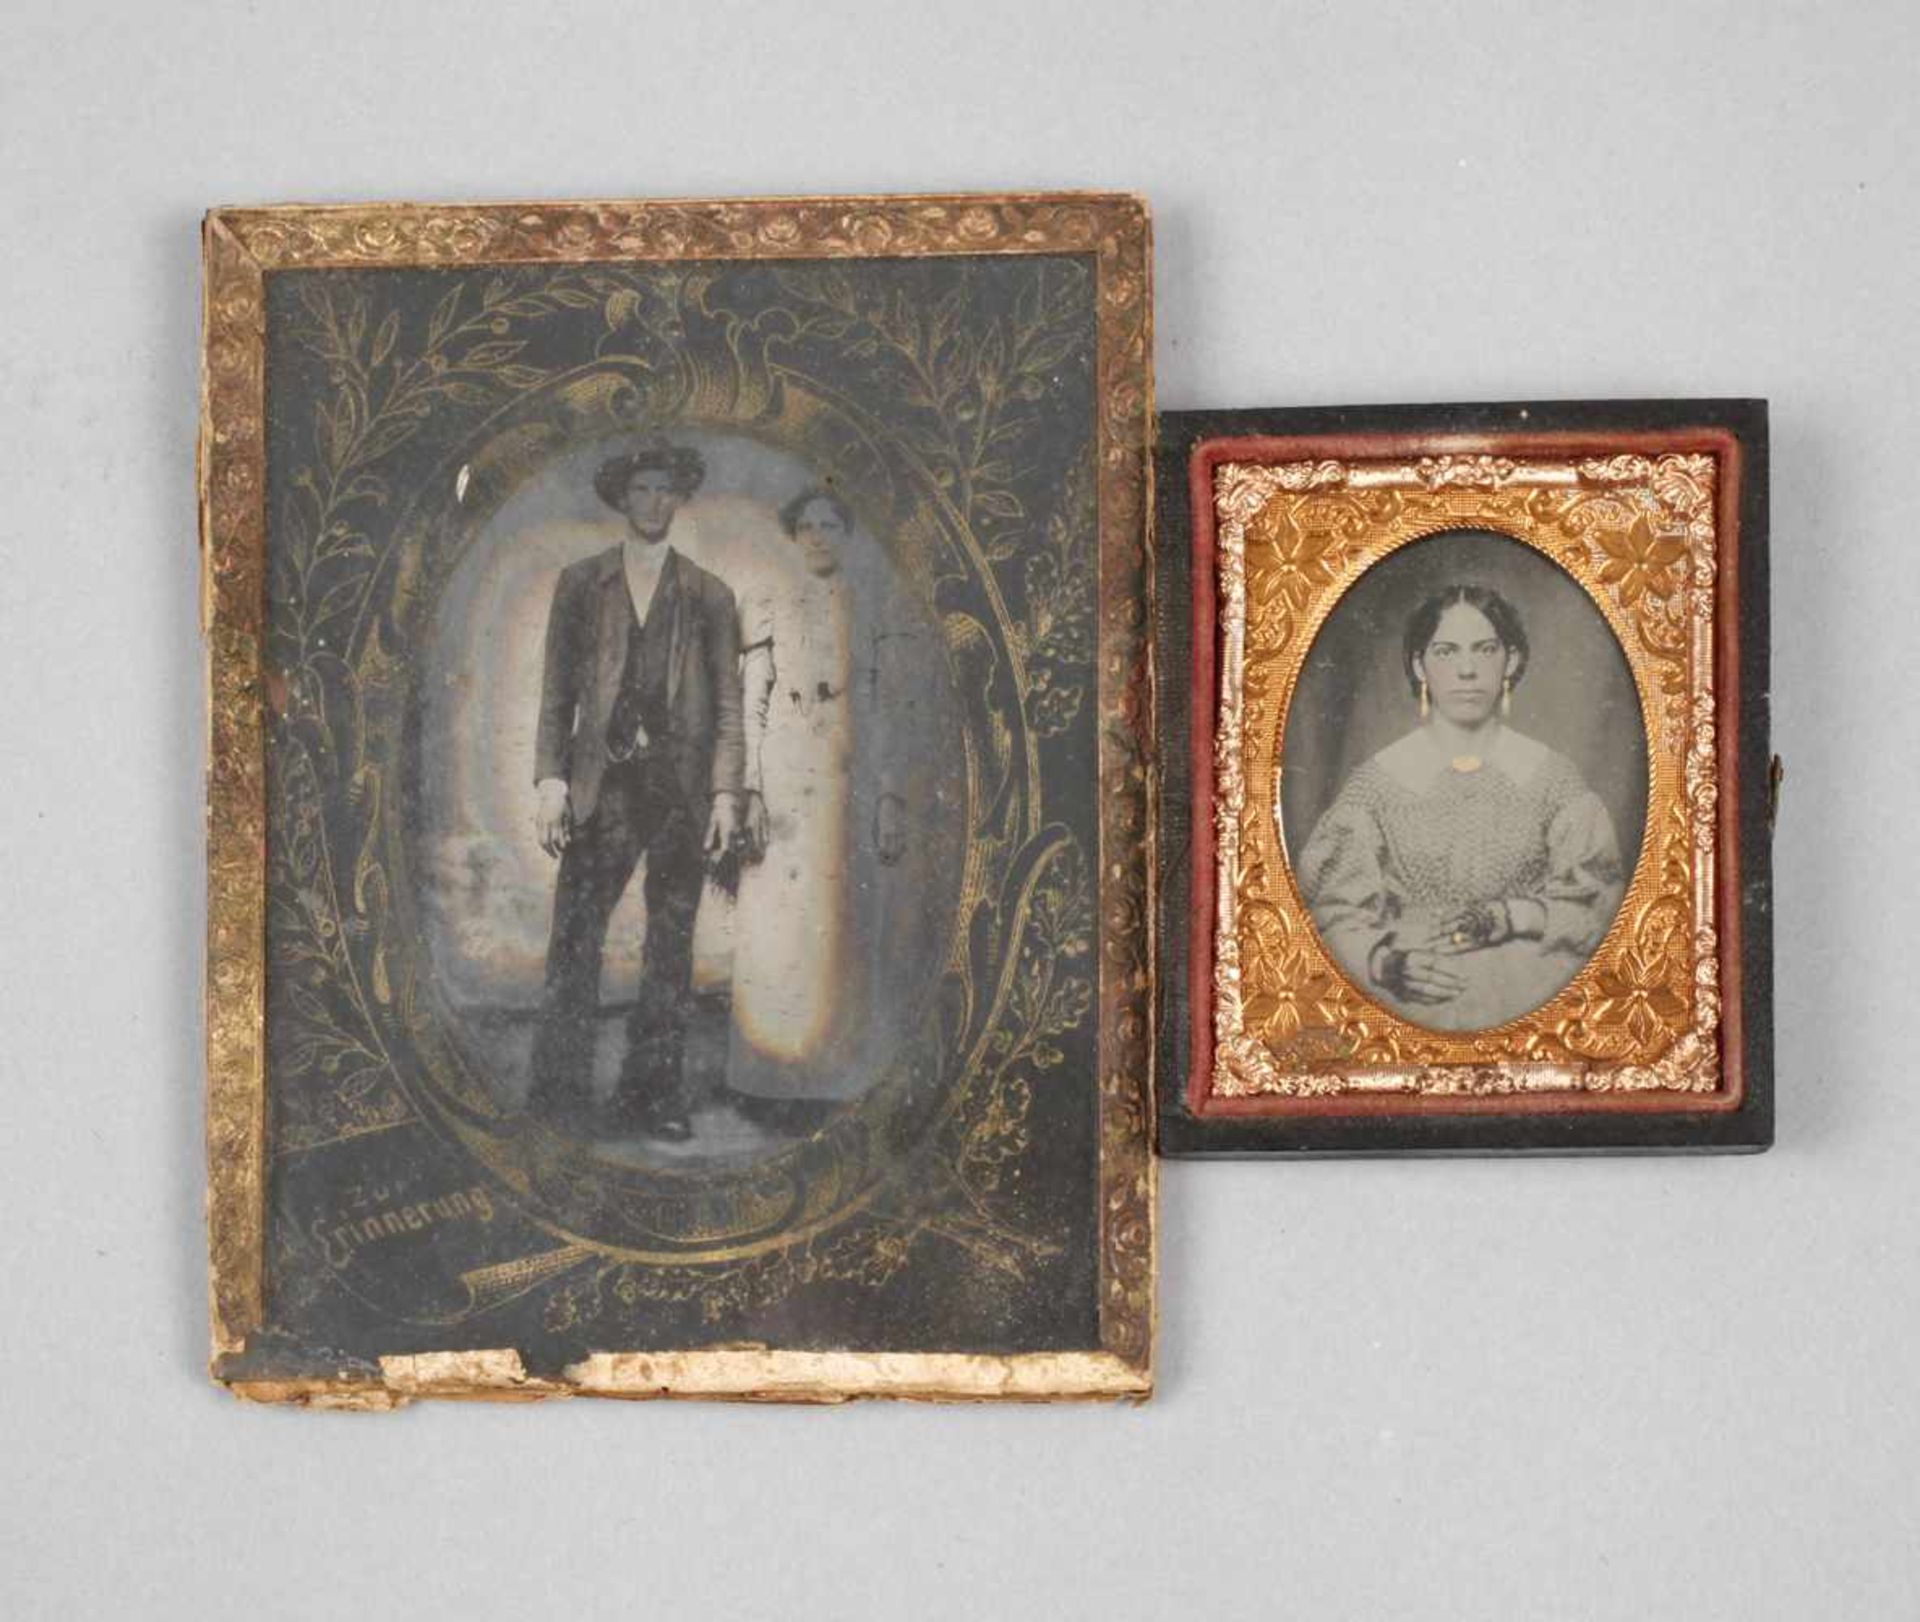 Zwei frühe Heliografien19. Jh., ungemarkt, Ganzfigurenbildnis eines Paares sowie